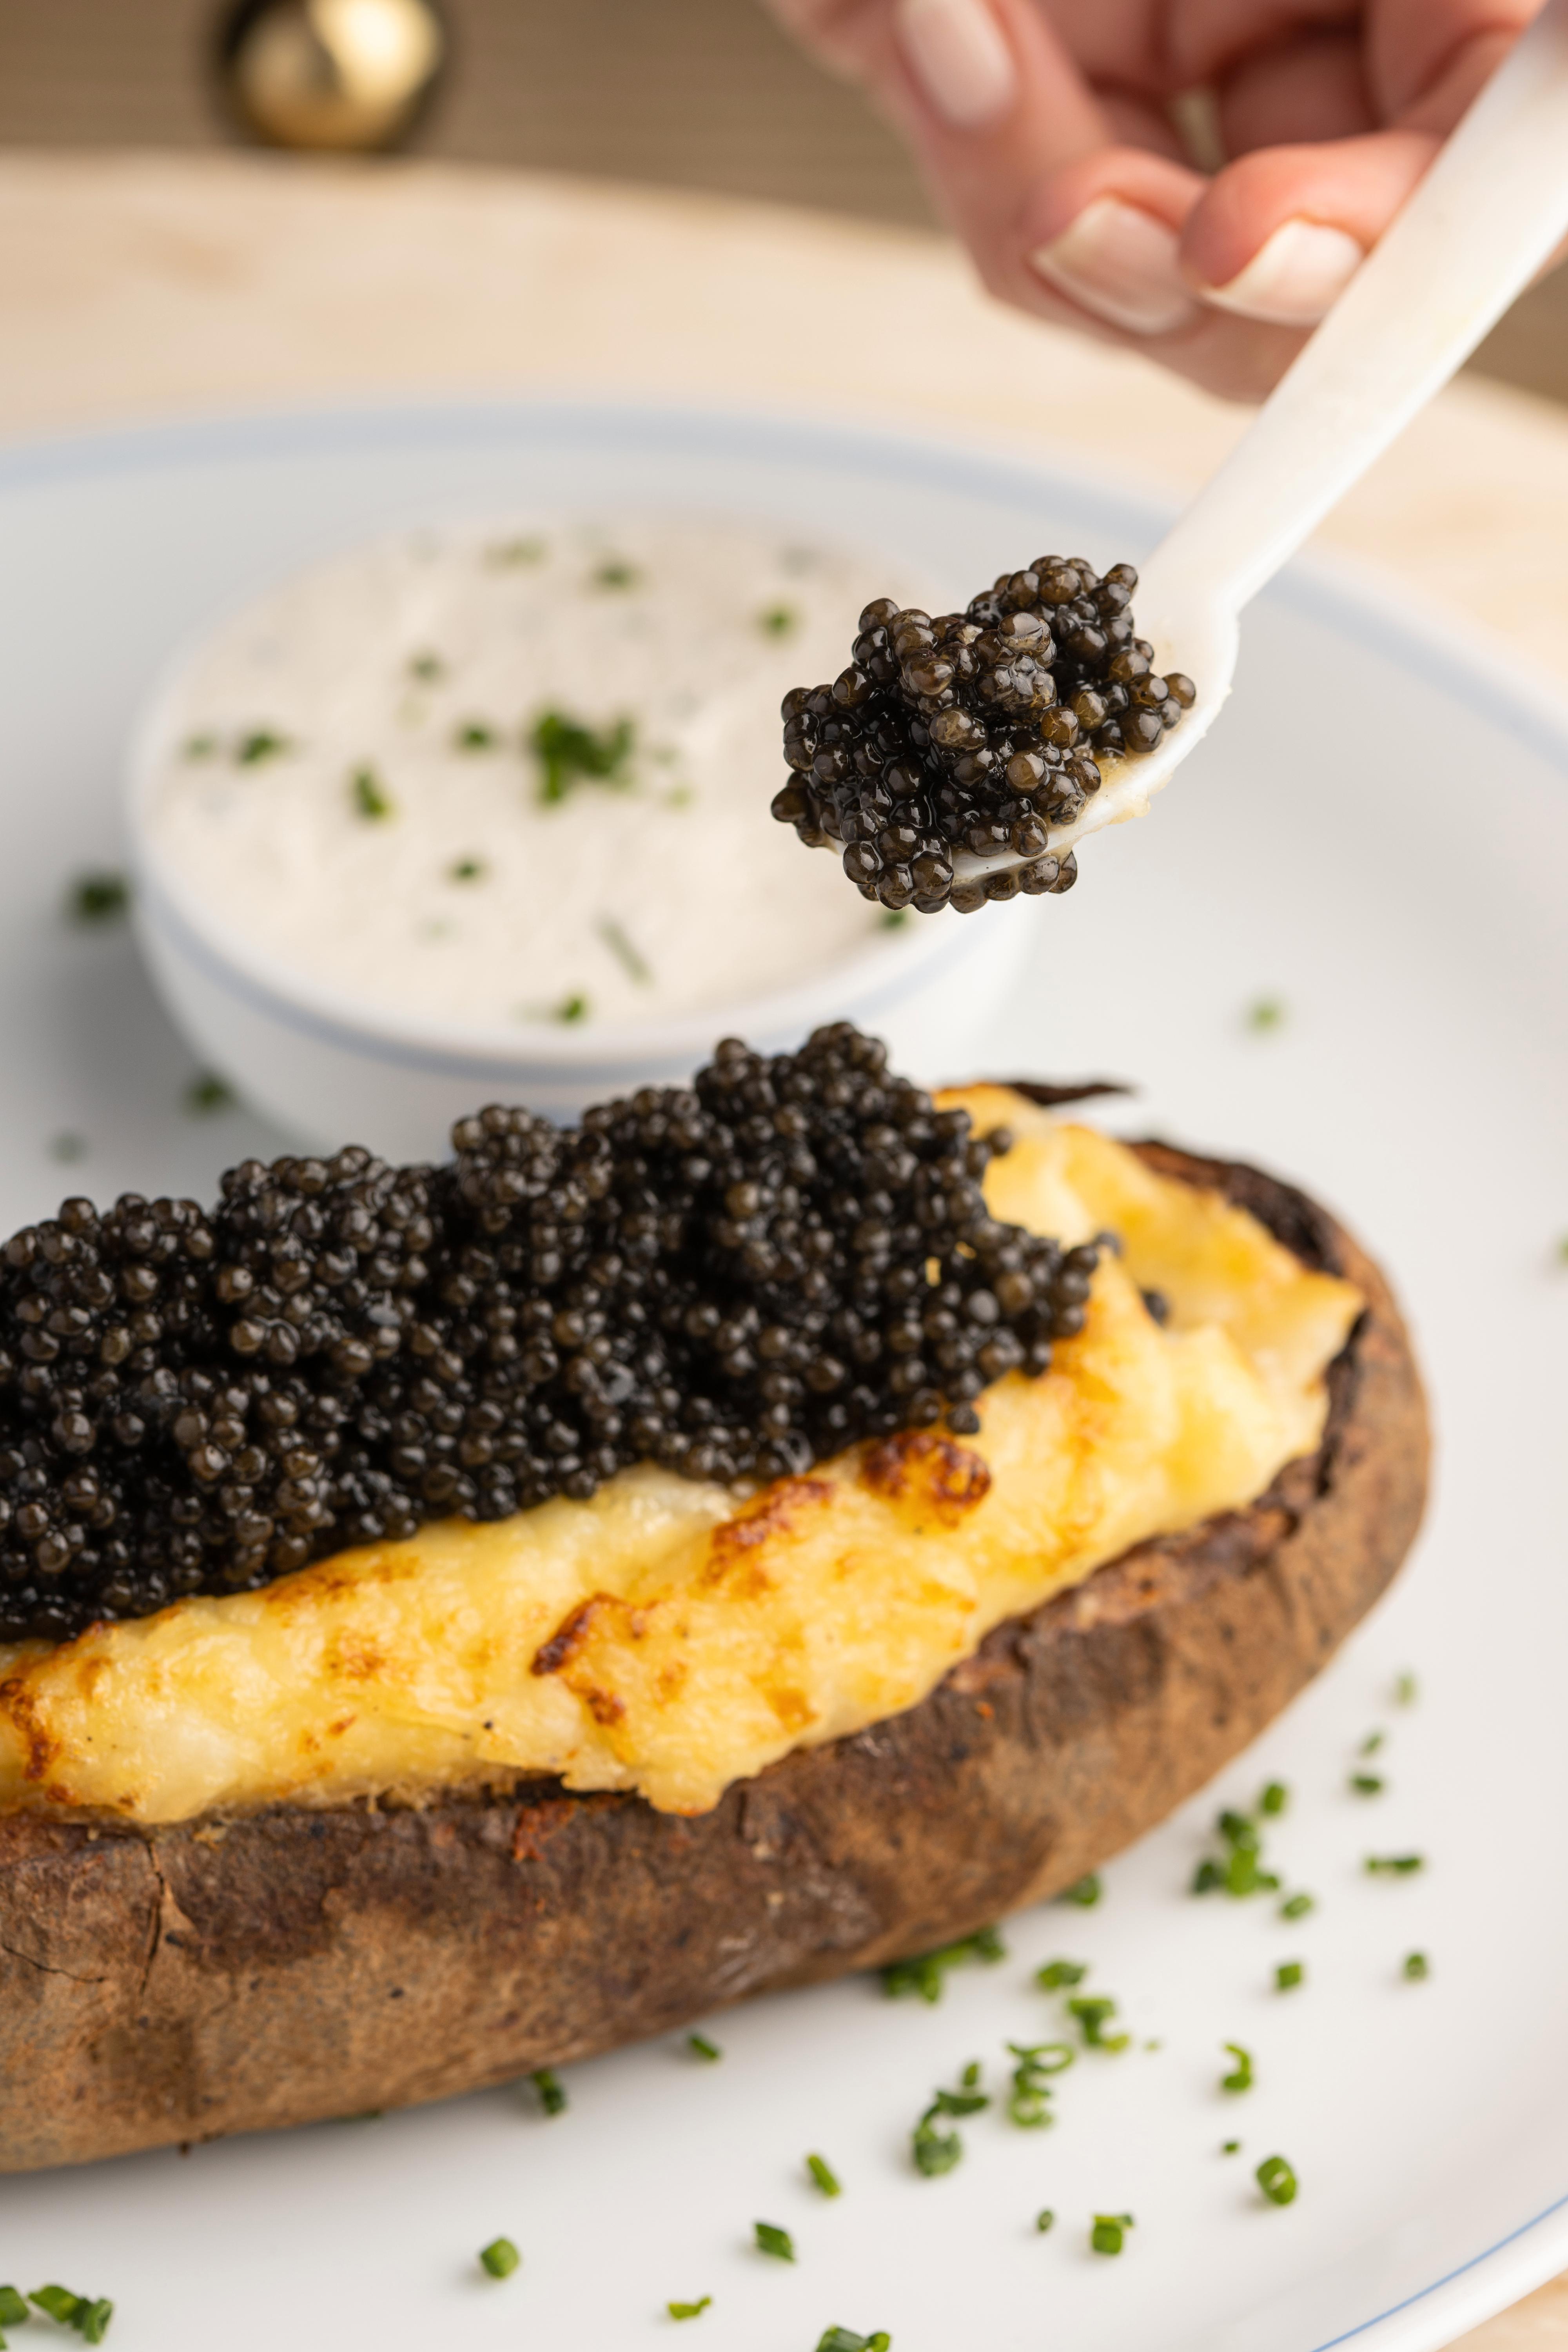 HAVETS EKSTRAVAGANSE: Skal det være litt kaviar på potet? Franske Caviar Kaspia går internasjonalt.